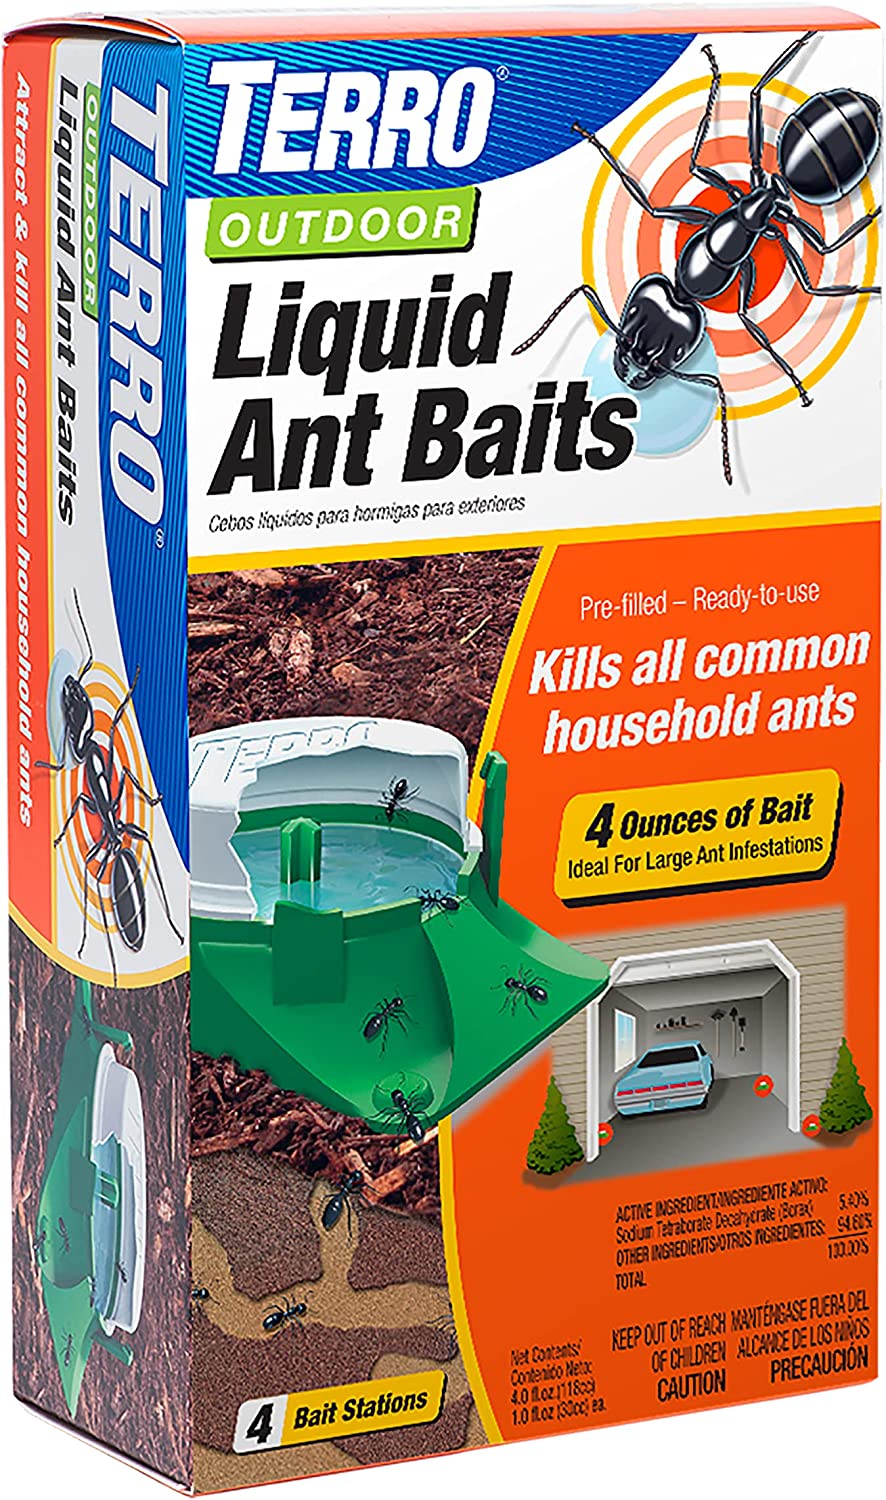 Terro T1804 6 Outdoor Liquid Ant Baits